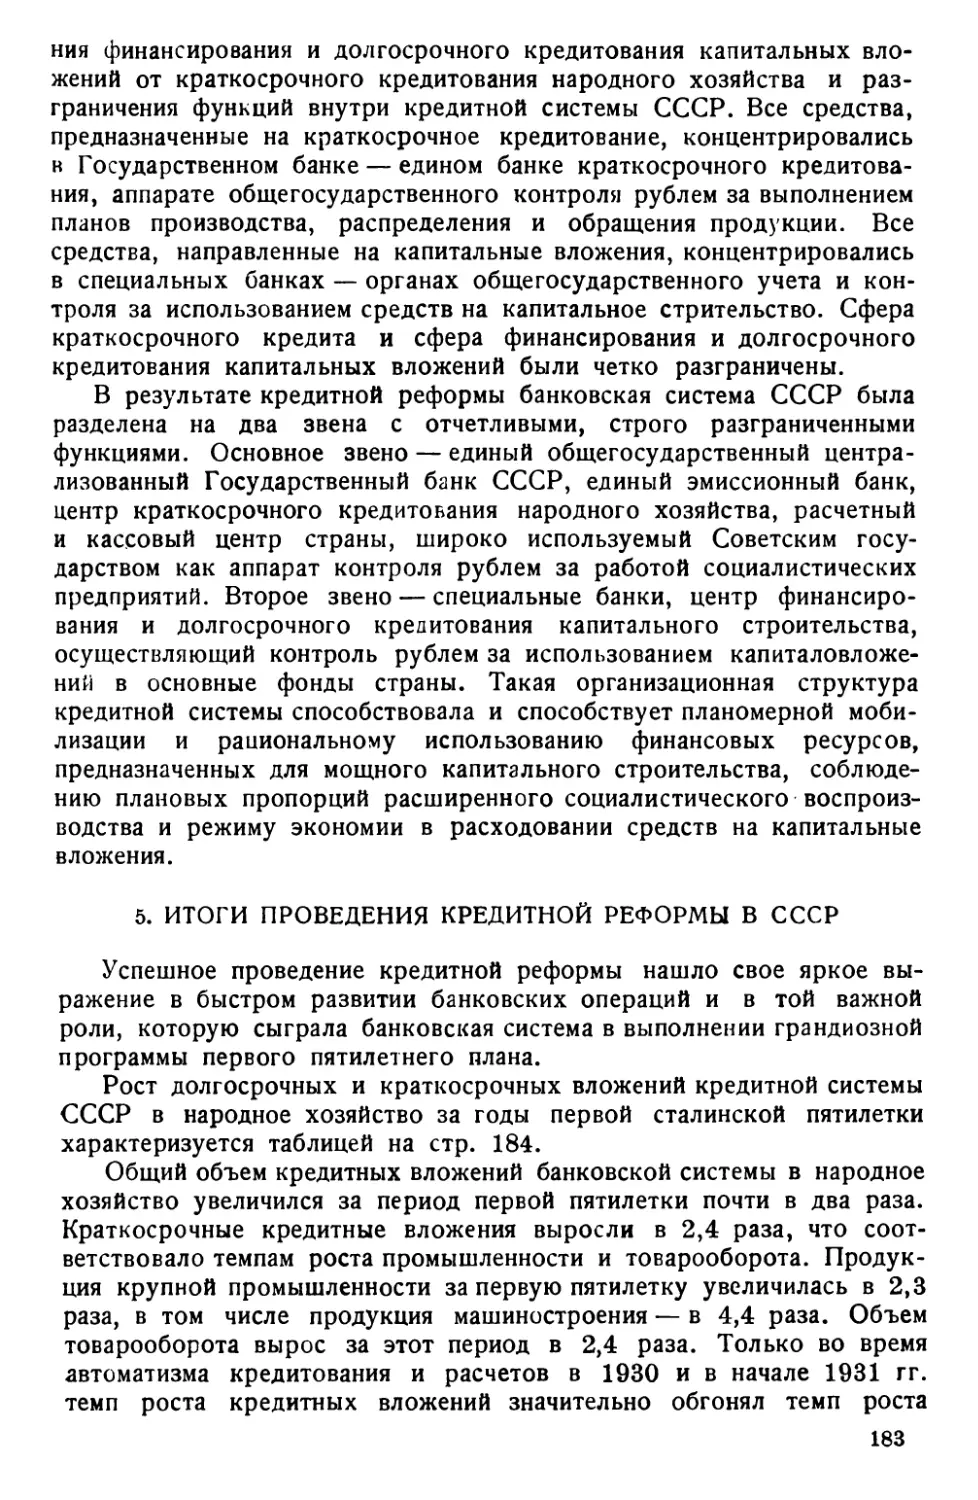 5. Итоги проведения кредитной реформы в СССР